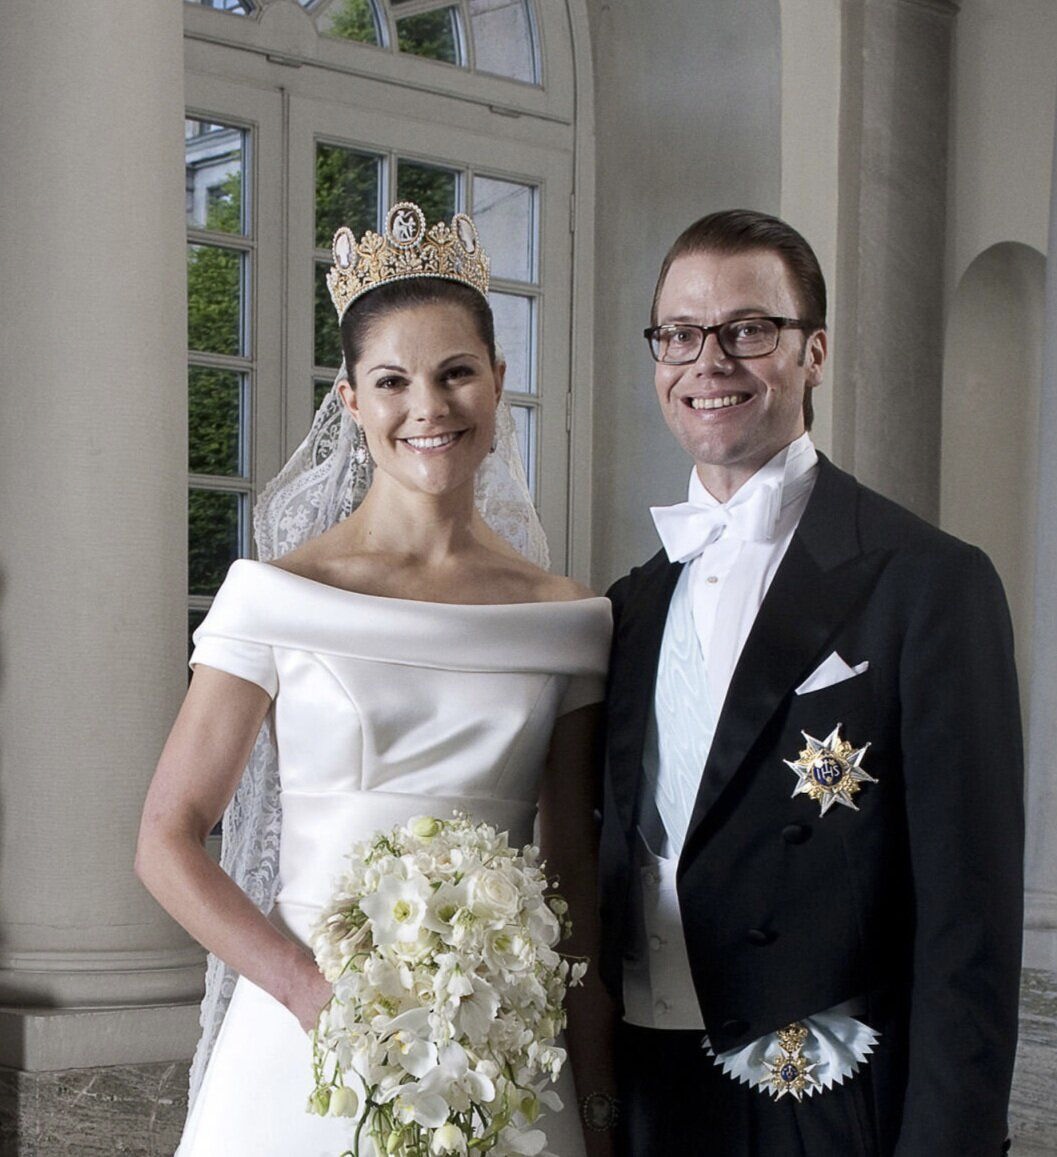 الأميرة فيكتوريا وريثة عرش السويد وزوجها الأمير دانيال